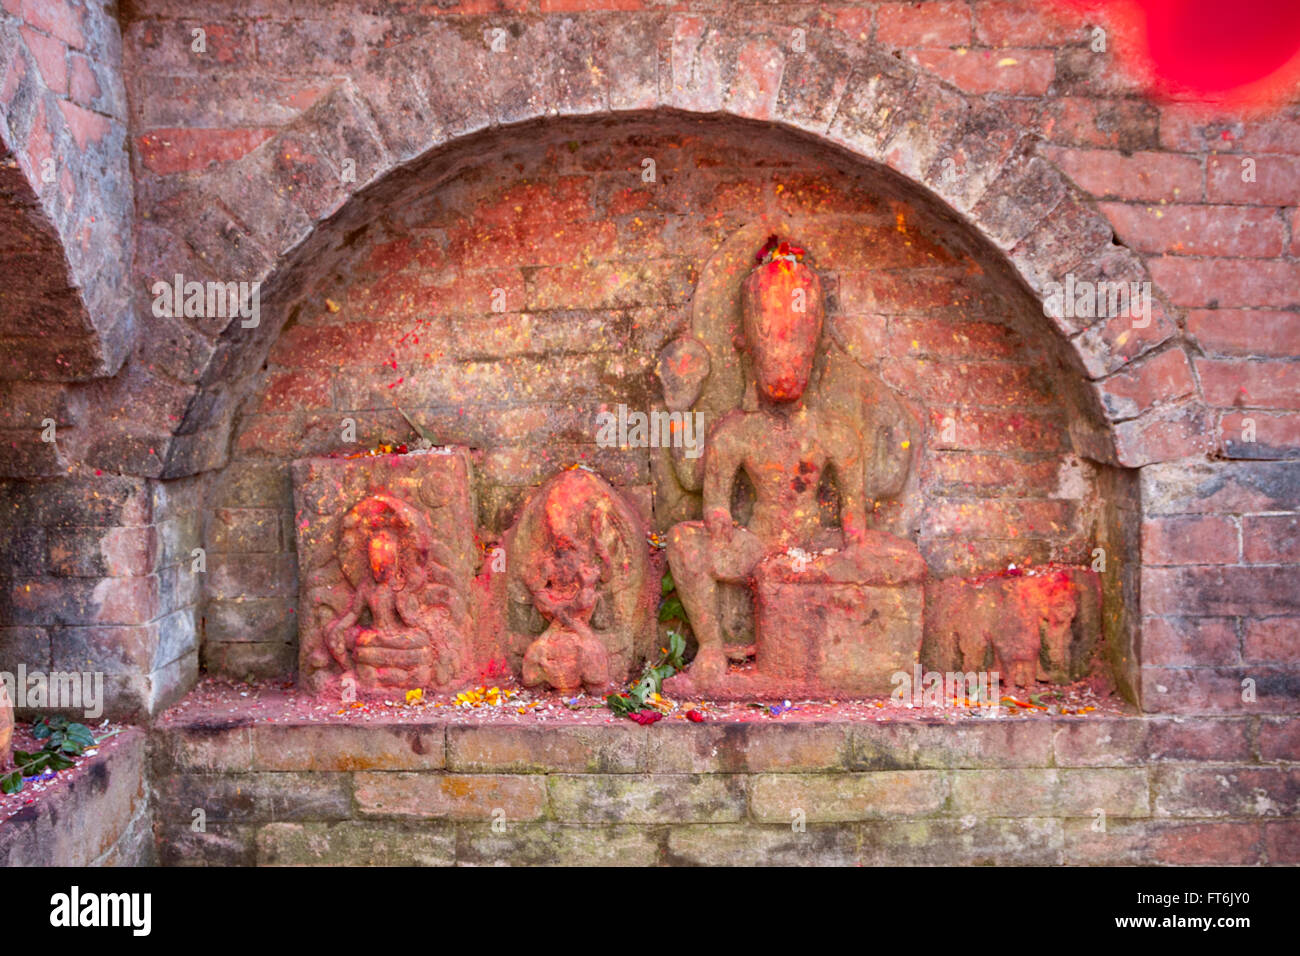 Népal, Katmandou. Lieu de culte datant de la période pré-Lichchhavi, probablement 3ème. Siècle après J.-C. Des offrandes de riz et de pétales de fleurs. Banque D'Images